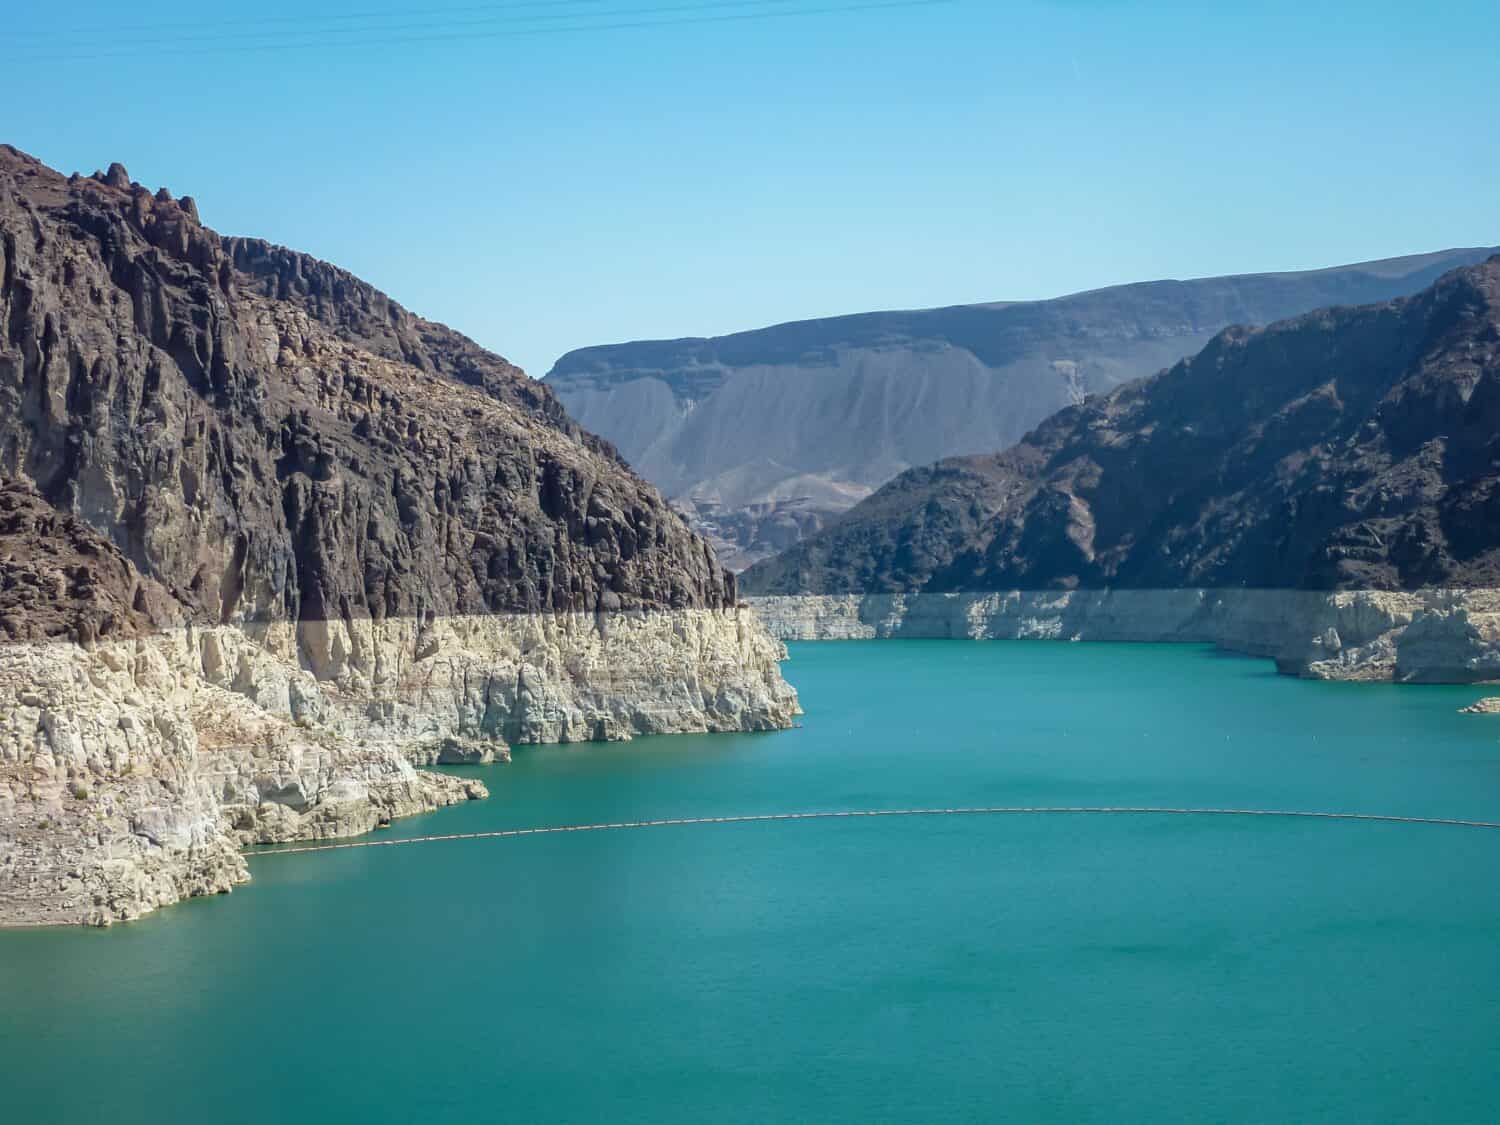 La diga di Hoover che guarda verso il lago Mead dal ponte commemorativo Mike O'Callaghan-Pat Tillman, confine di stato del Nevada e dell'Arizona, Stati Uniti.  Acqua blu turchese circondata da lussureggianti catene montuose secche